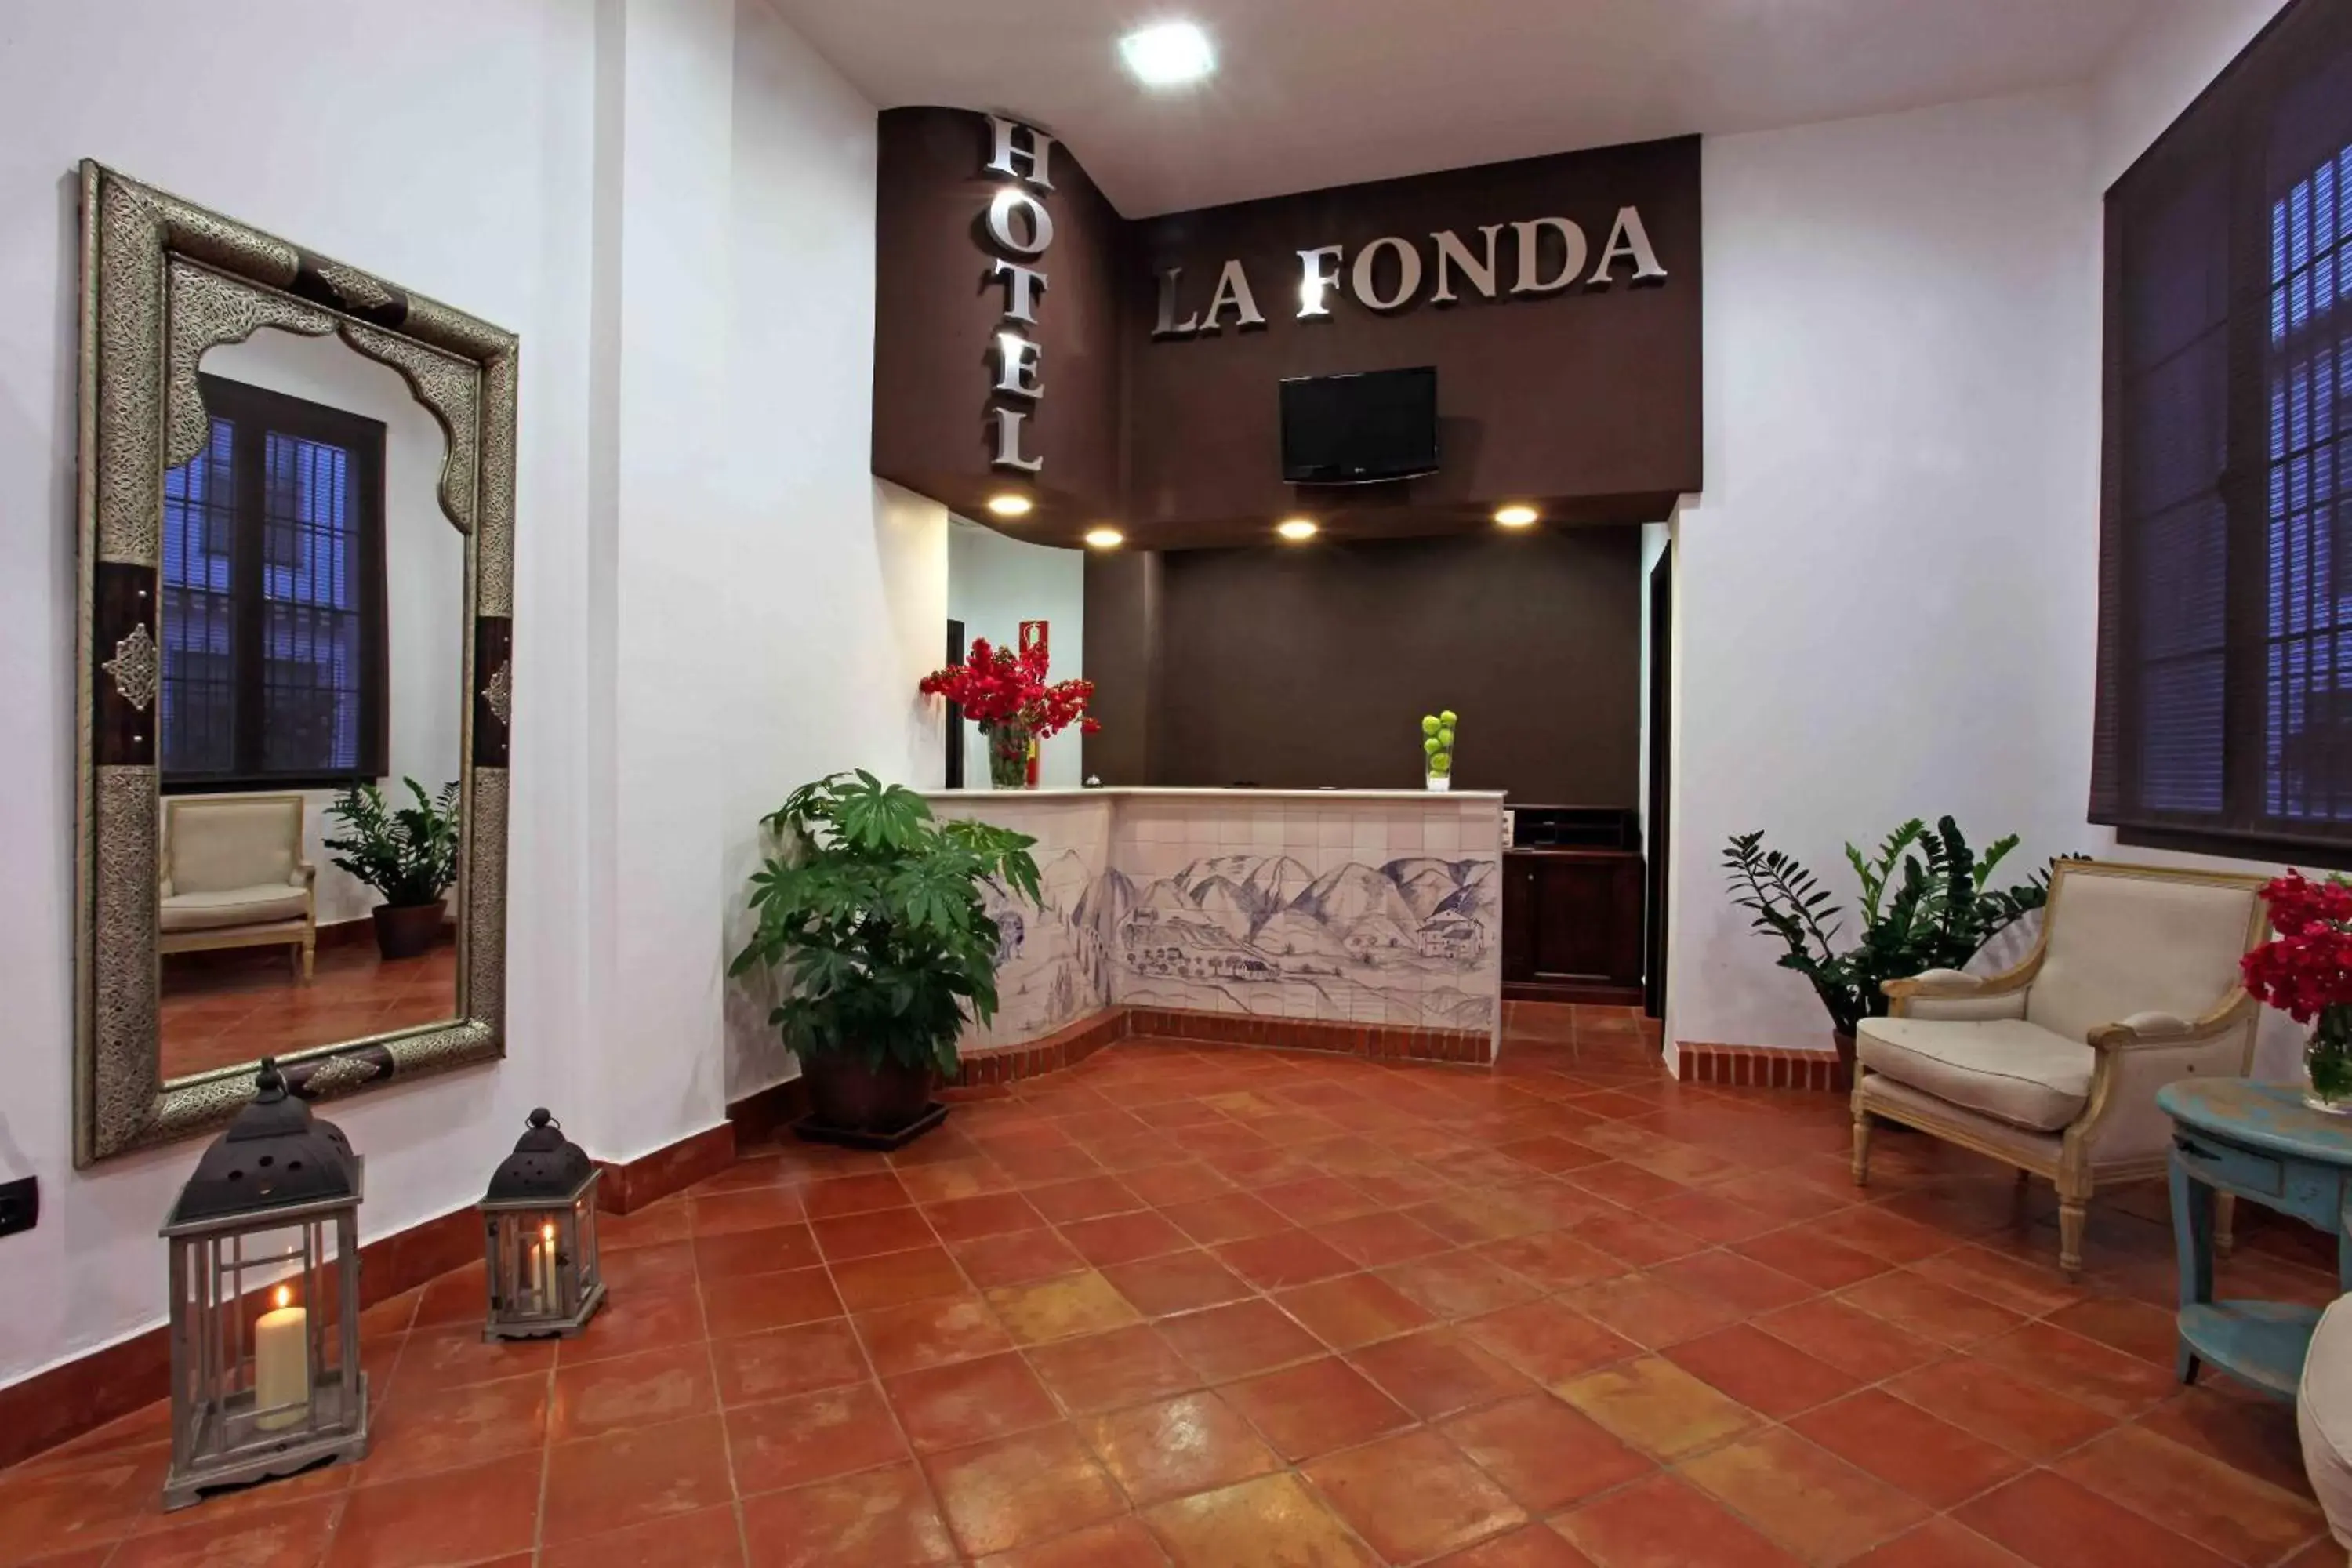 Lobby or reception, Lobby/Reception in Hotel La Fonda